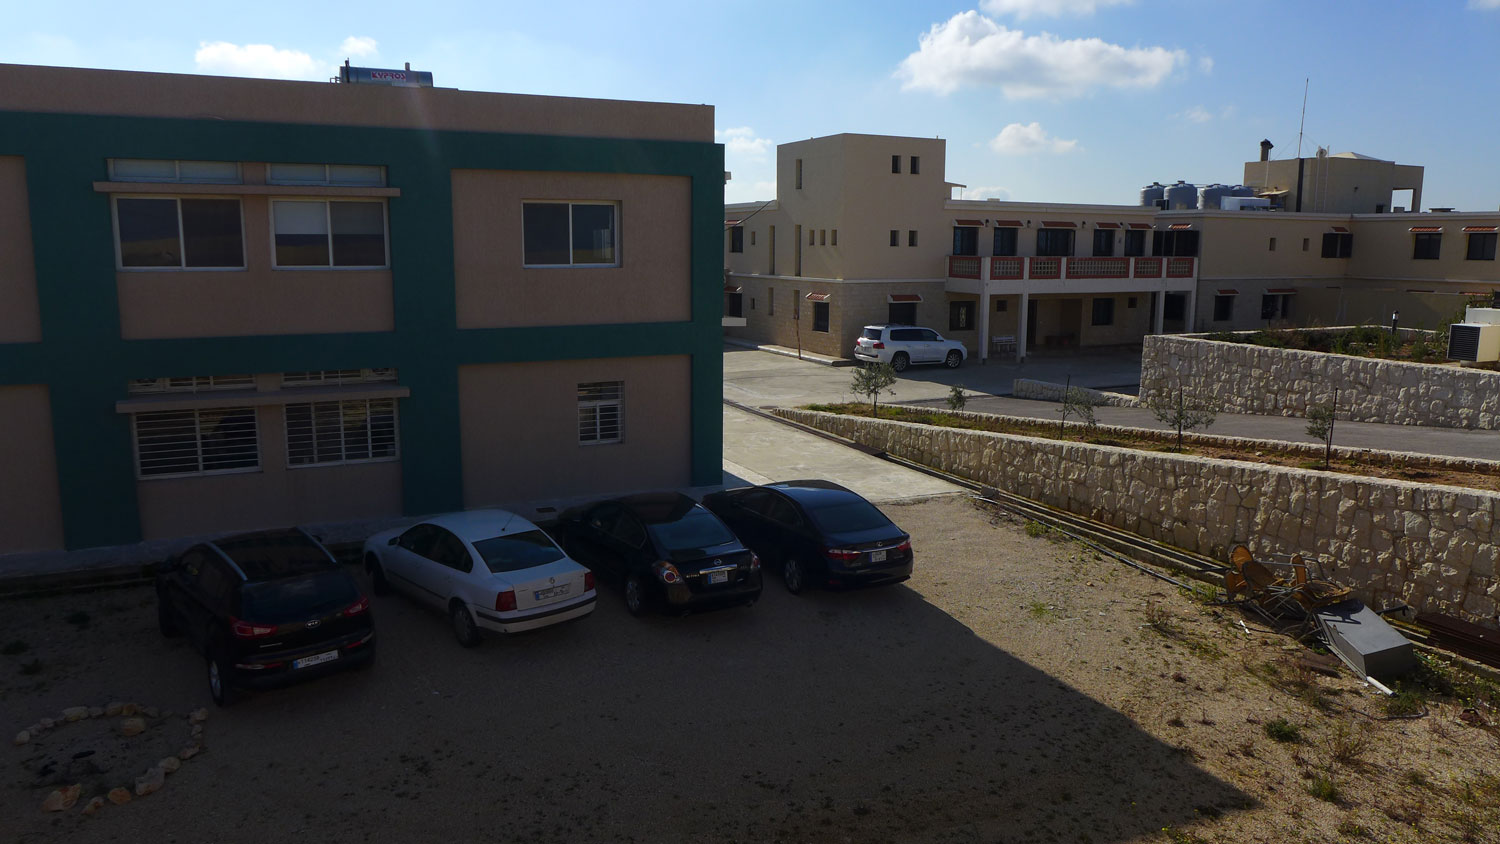 Les locaux de l’IMS (Institute of management and services) dans le village de Maad, au nord de Byblos